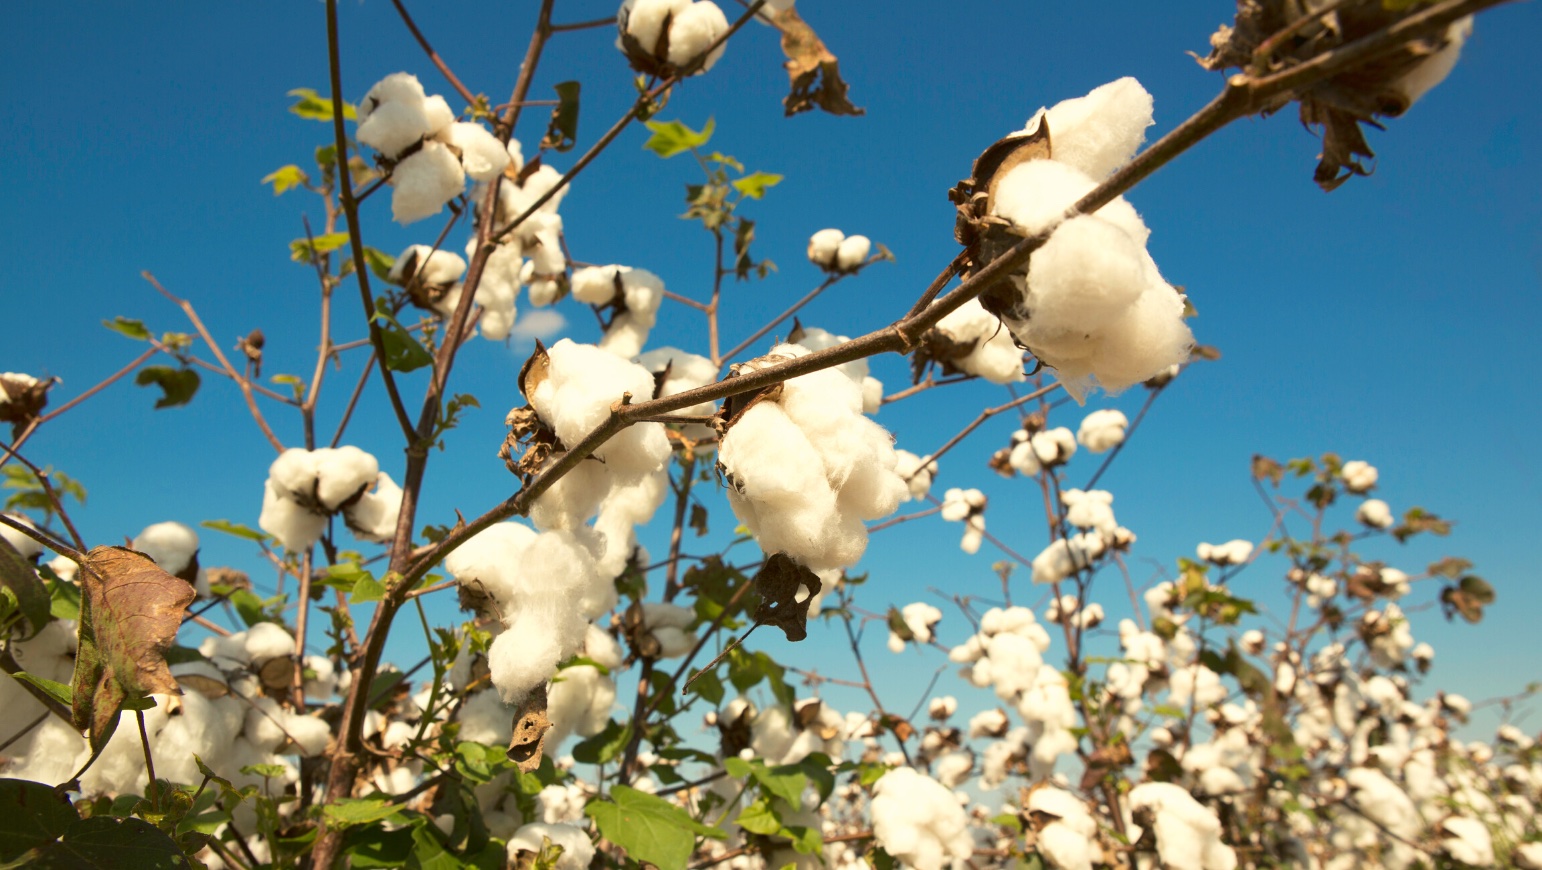 La mosca blanca: daños, prevención y control en cultivos de algodón.